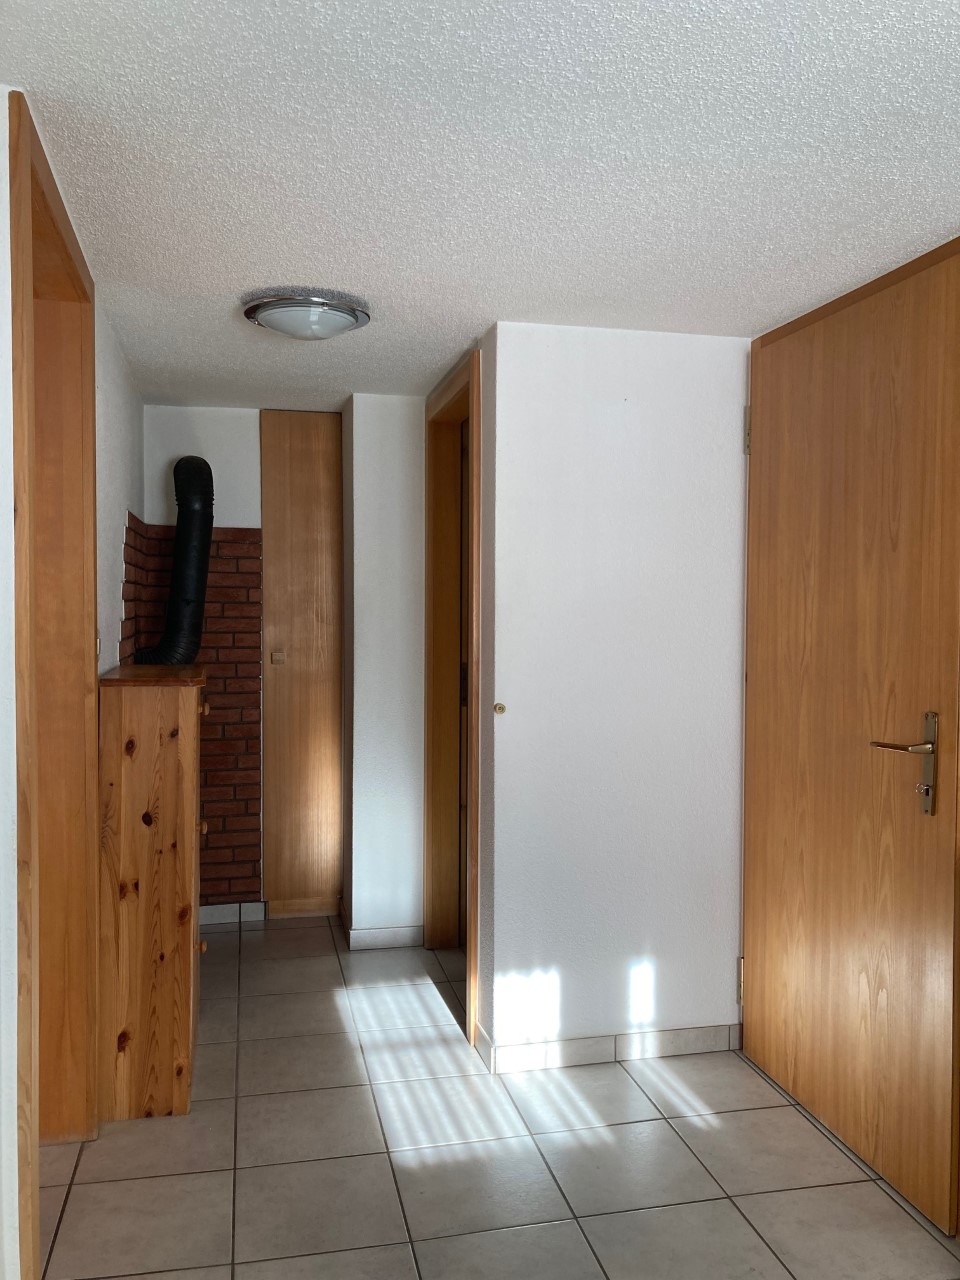 Vermiete  2 1/2 Zimmerwohnung in Staldenried, 1.OG ca. 44 m2